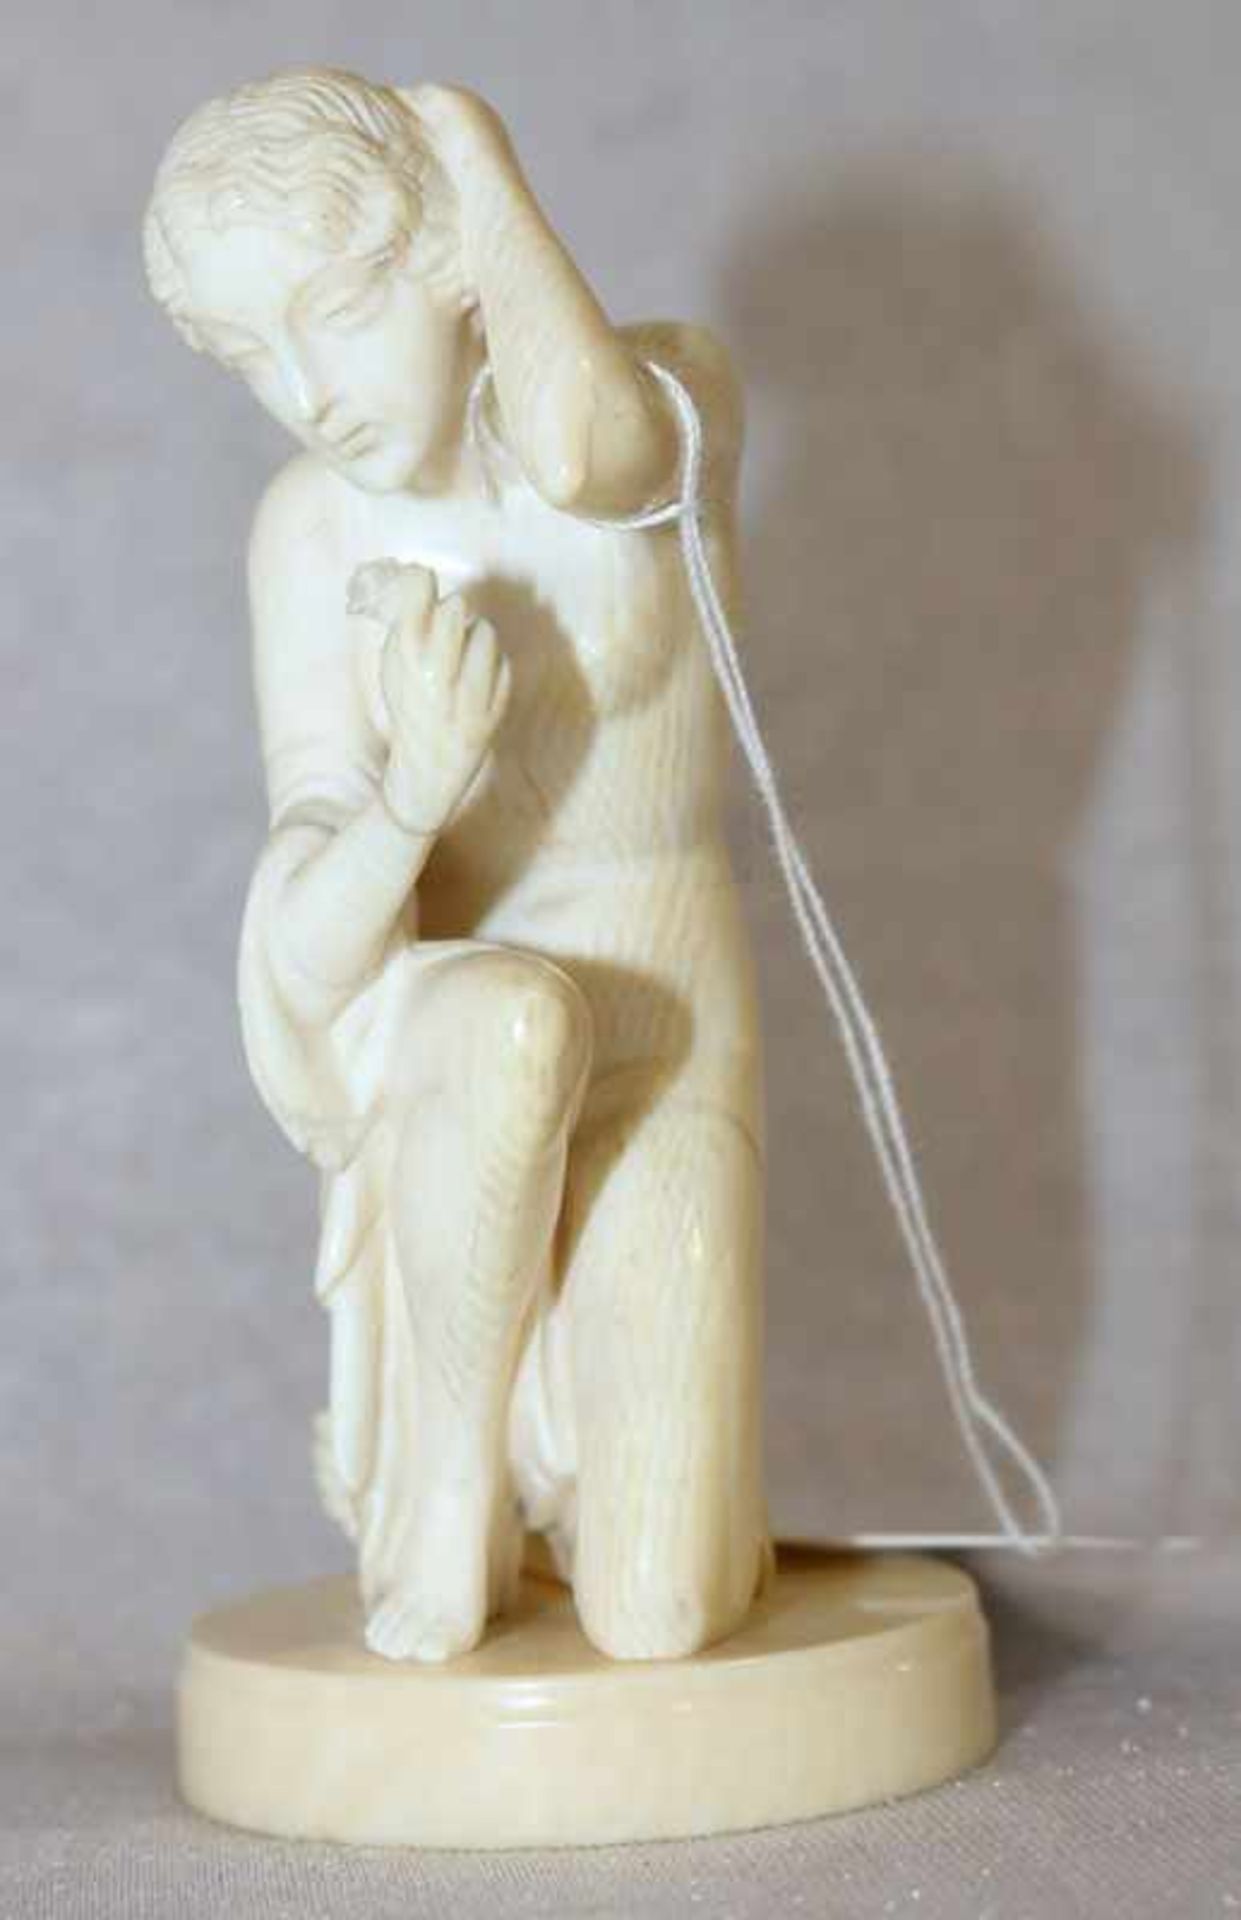 Elfenbein Figurenskulptur 'Knieende Frau', auf runder Plinthe, Hand geklebt, komplett ?, H 10 cm,